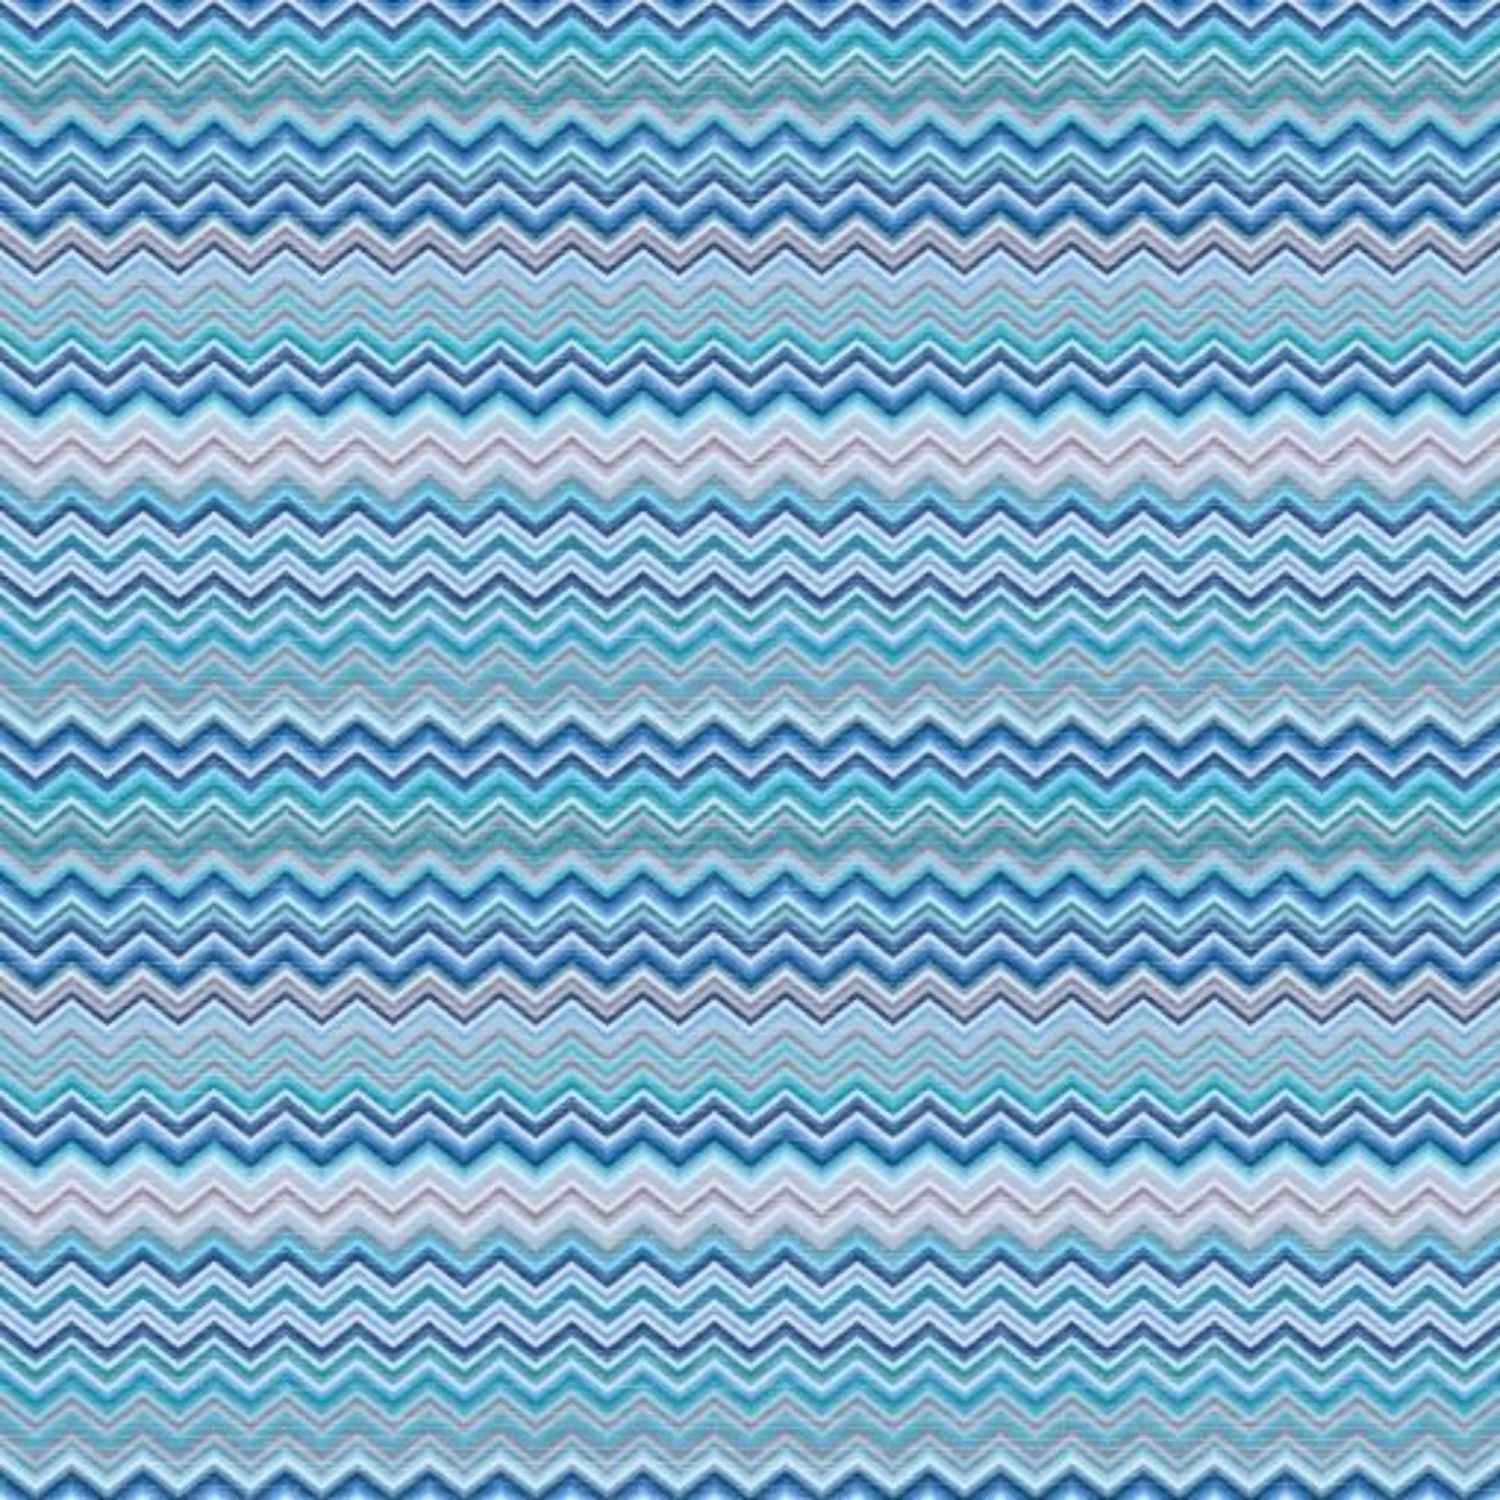 baia-azzurro-copripiumino-puro-cotone-quadrifoglio-geometrico-zig-zag-chevron-azzurro-blu-grigio-celeste-multicolor-pattern